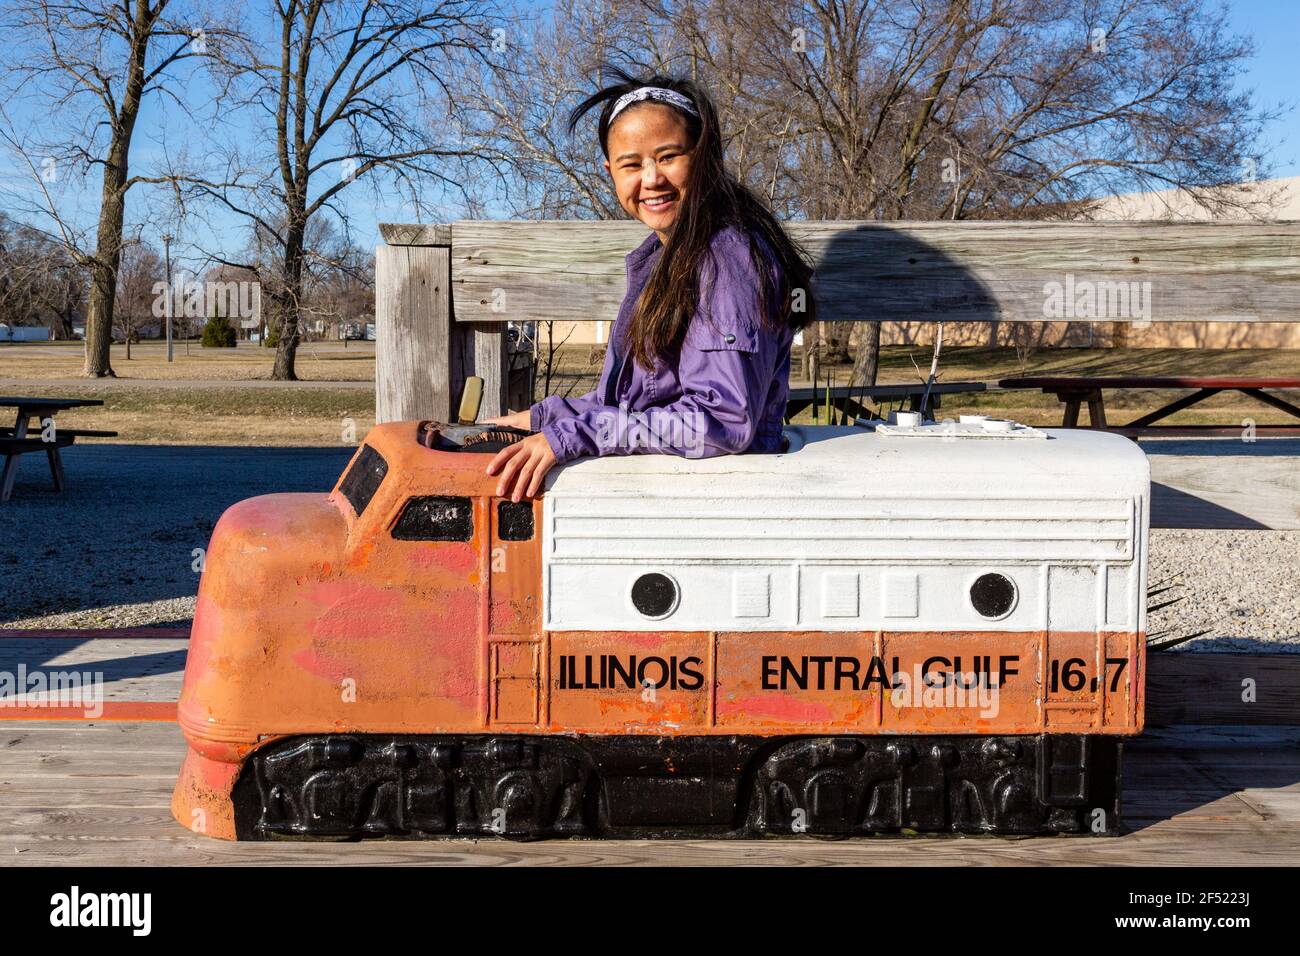 Une jeune femme souriante est assise dans une locomotive de chemin de fer du golfe central de l'Illinois au Hoosier Valley Railroad Museum à North Judson, Indiana, États-Unis. Banque D'Images